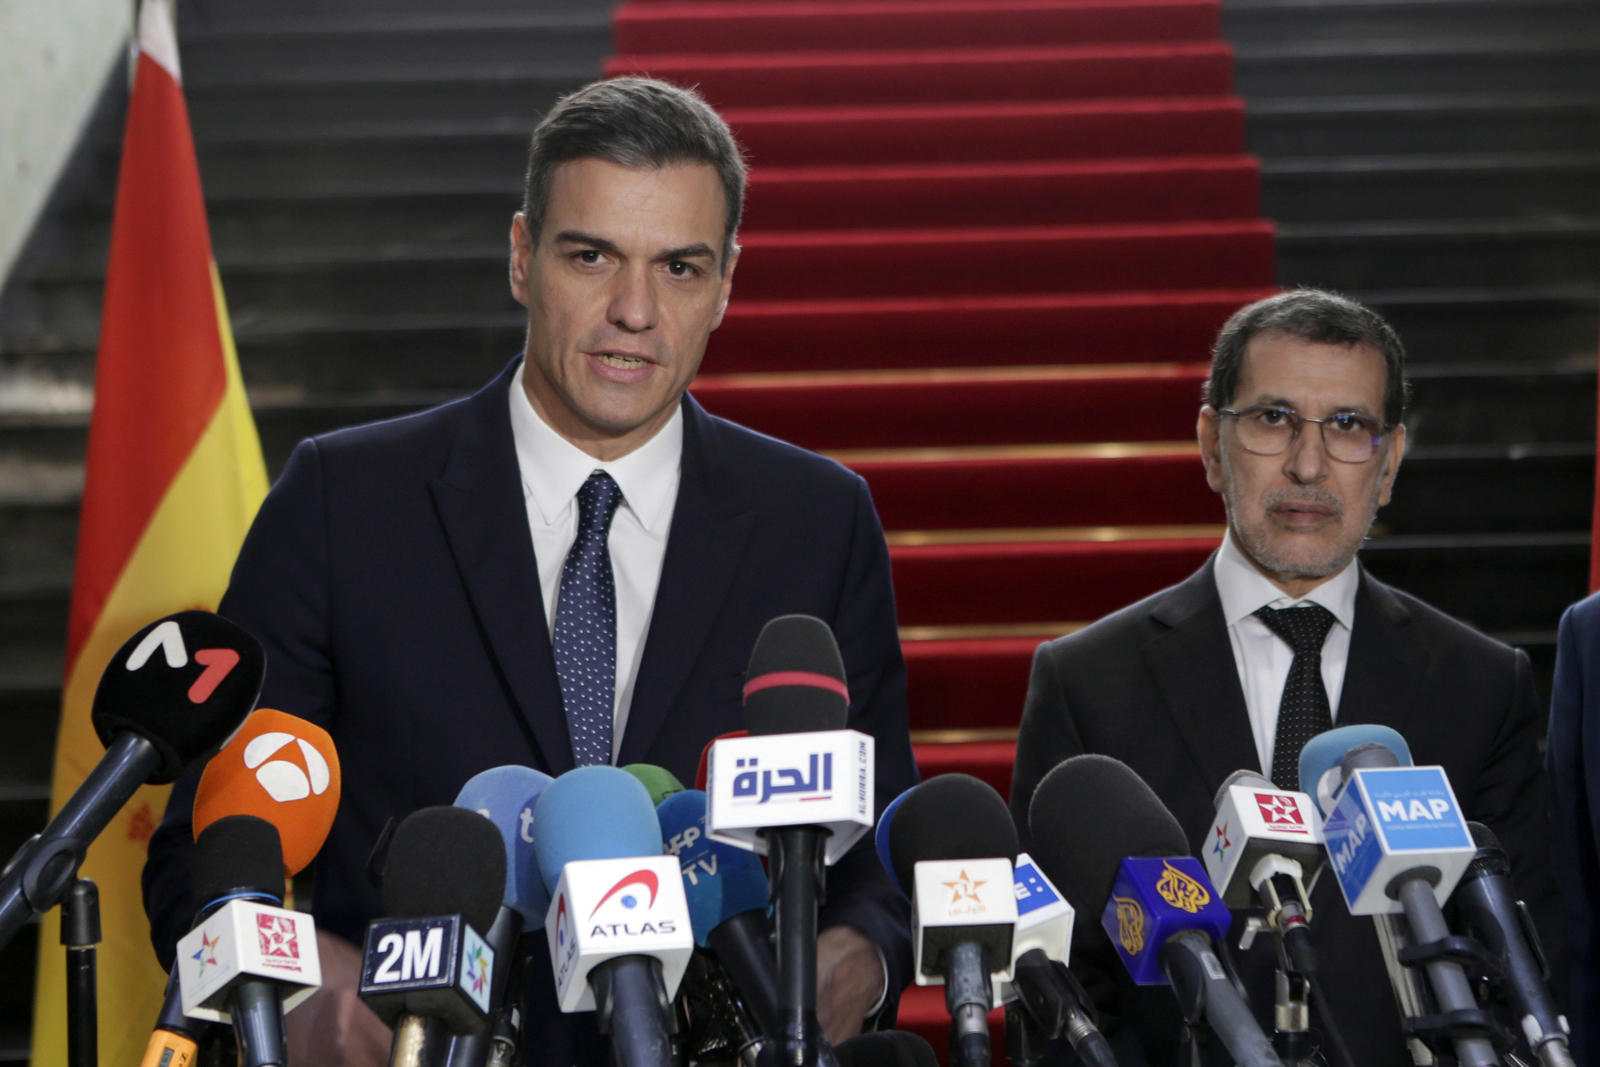 El presidente del gobierno español Pedro Sánchez (izq) ofrece una conferencia de prensa con su colega marroquí Saad Eddine el-Othmani.